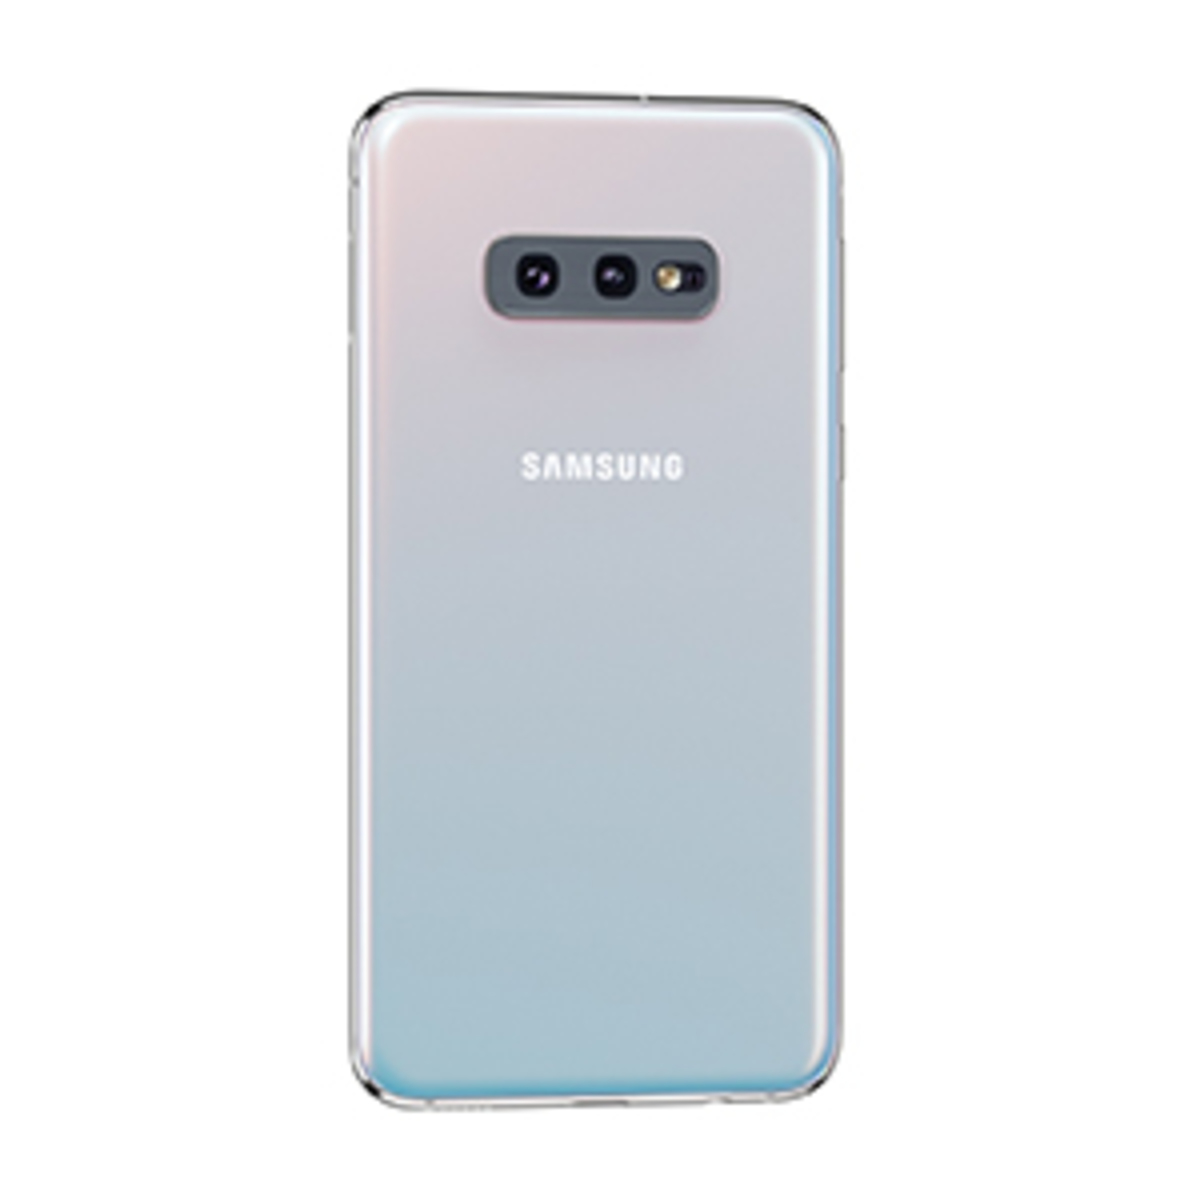 Samsung 23 256. Samsung Galaxy s10e Prism White. Самсунг s10e белый. Samsung s10e 256gb. Samsung Galaxy s10e - 128gb 256gb.